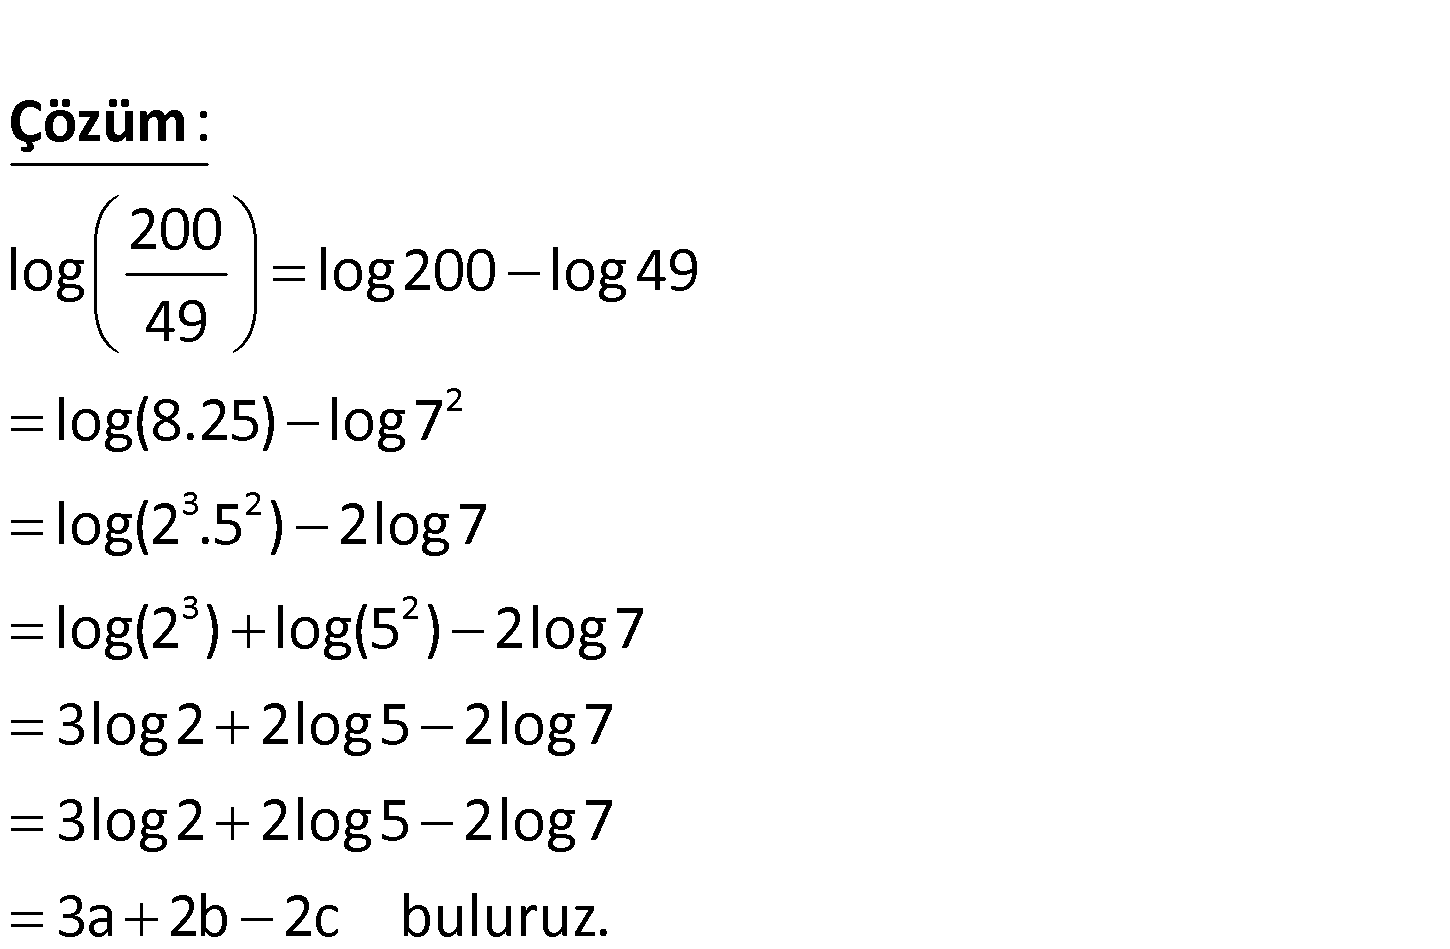 Log 2 64 log 2 5. Log2. Log 40. Log2 + log2. 2log2 5.